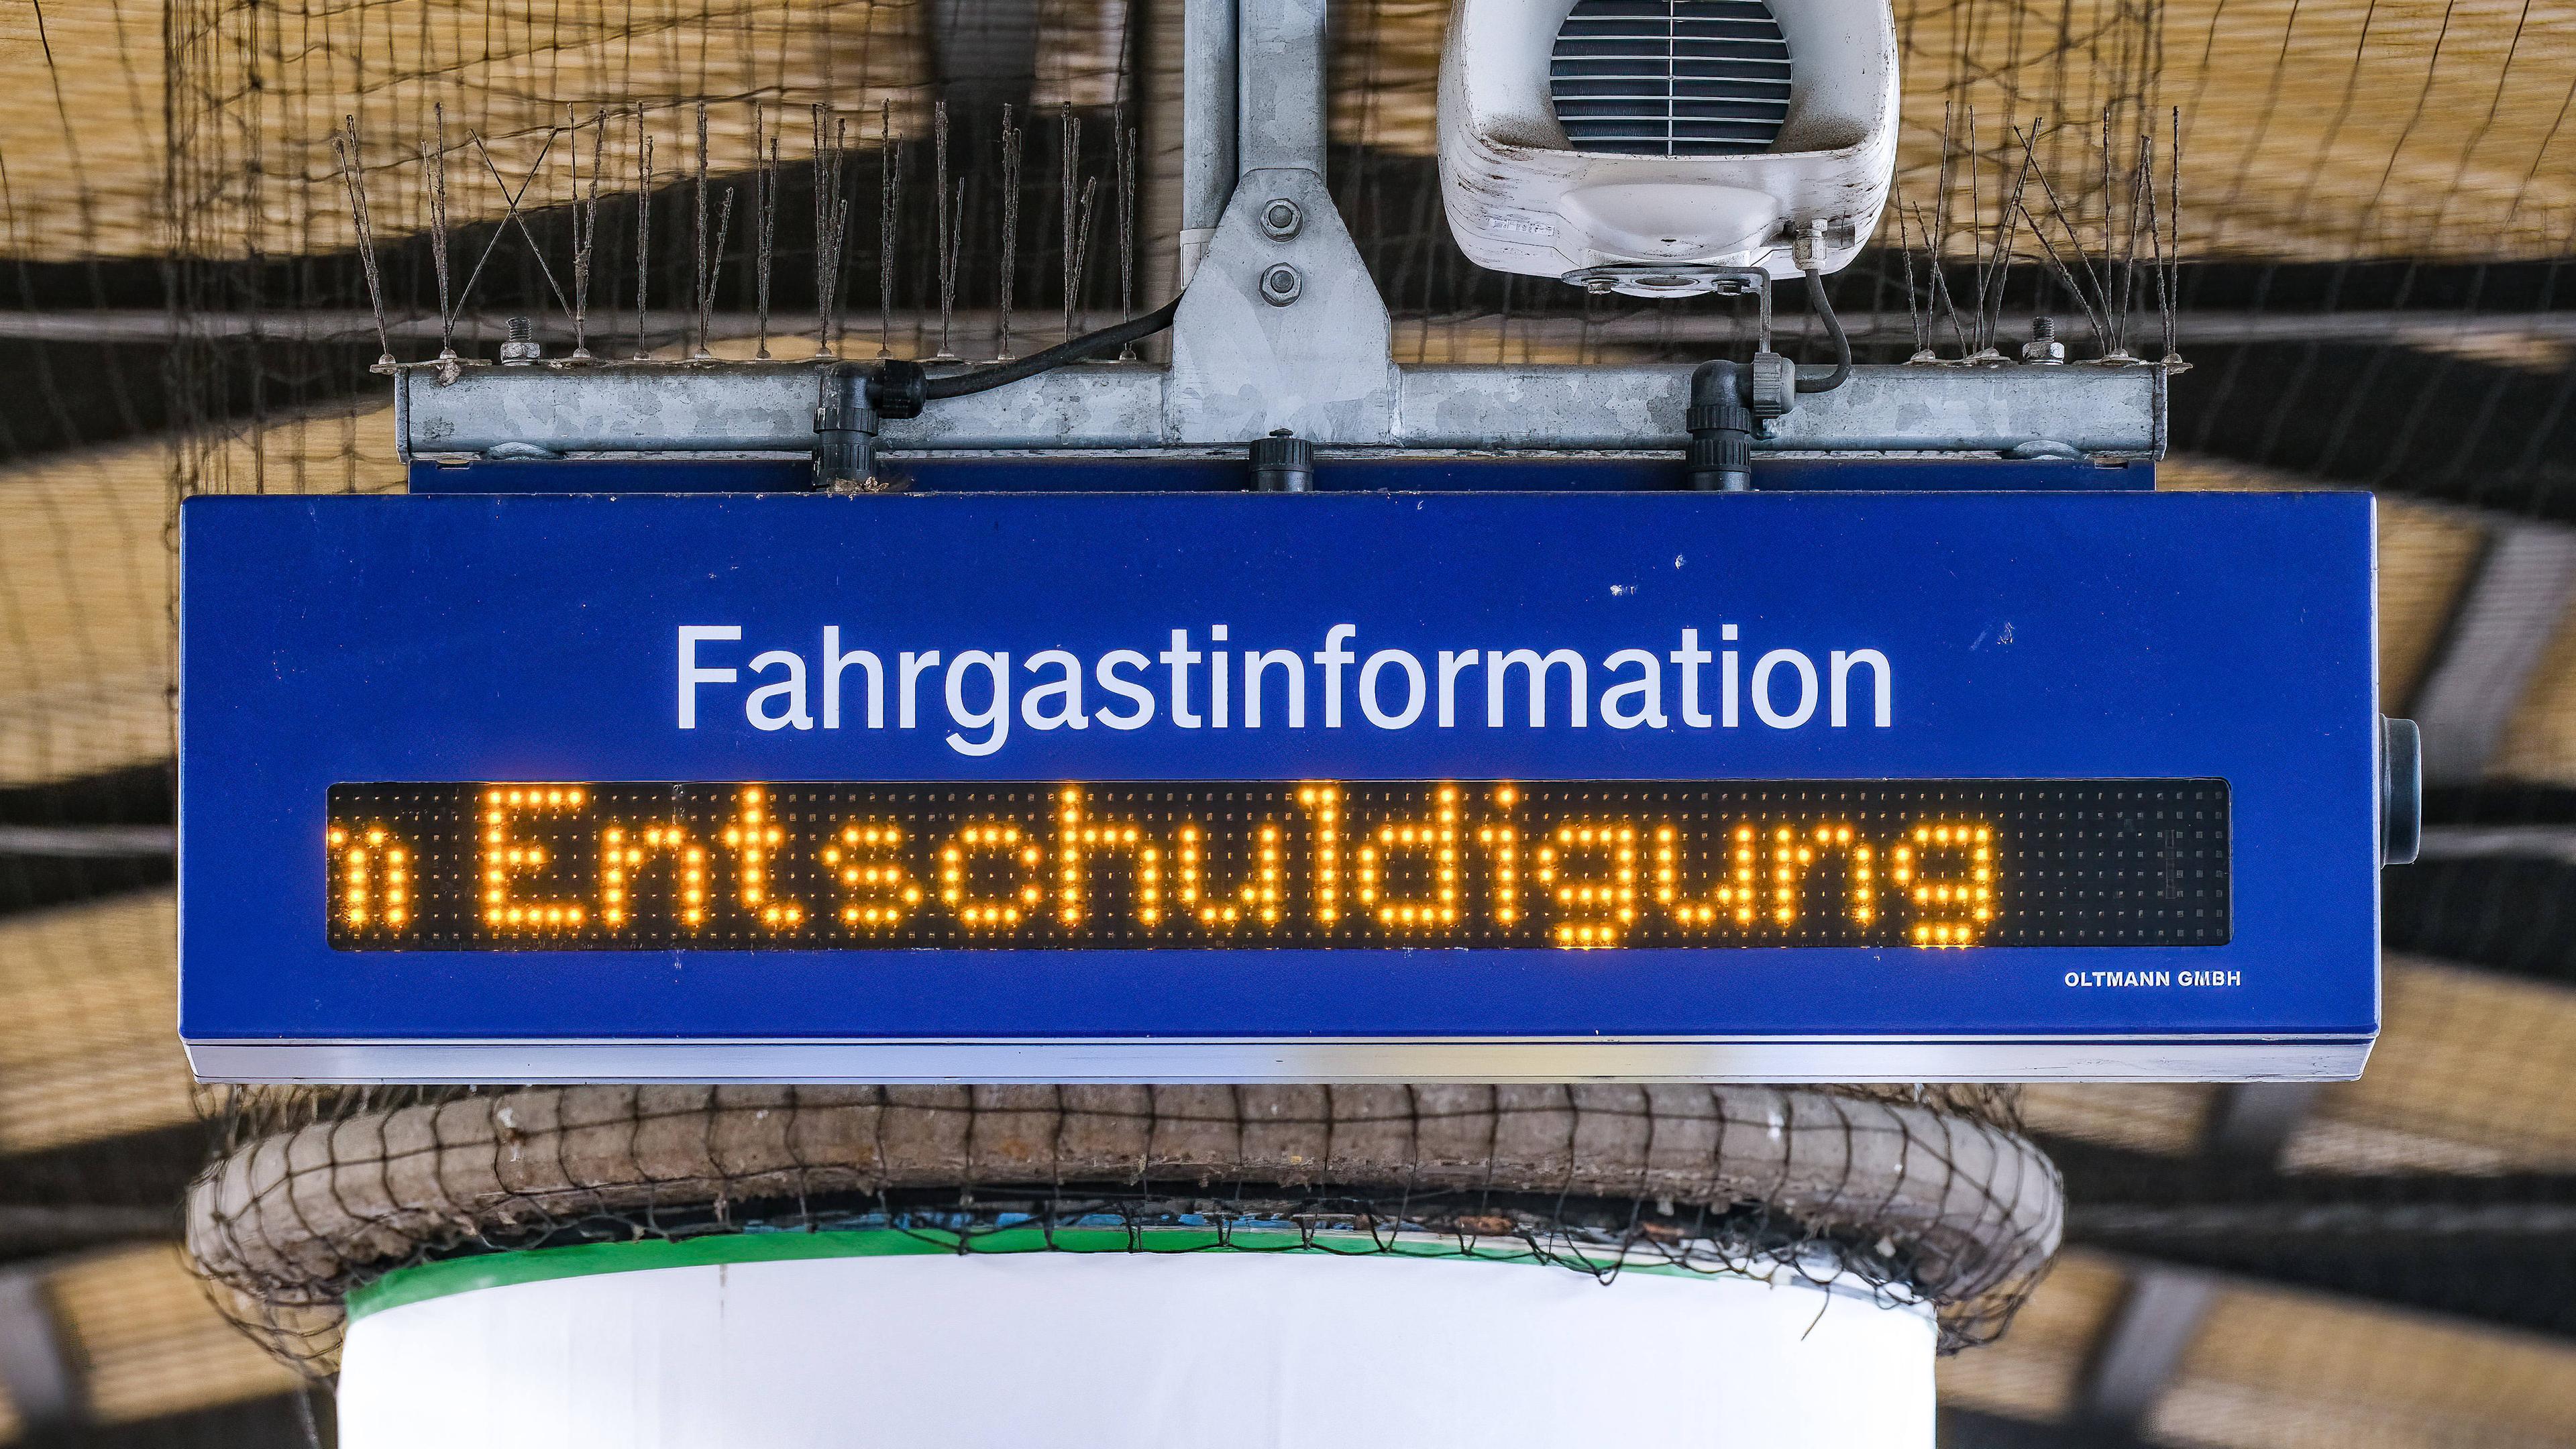 Am Düsseldorfer Bahnhof läuft am Bahnsteig die Fahrgastinformation "Entschuldigung" wegen einer Verspätung